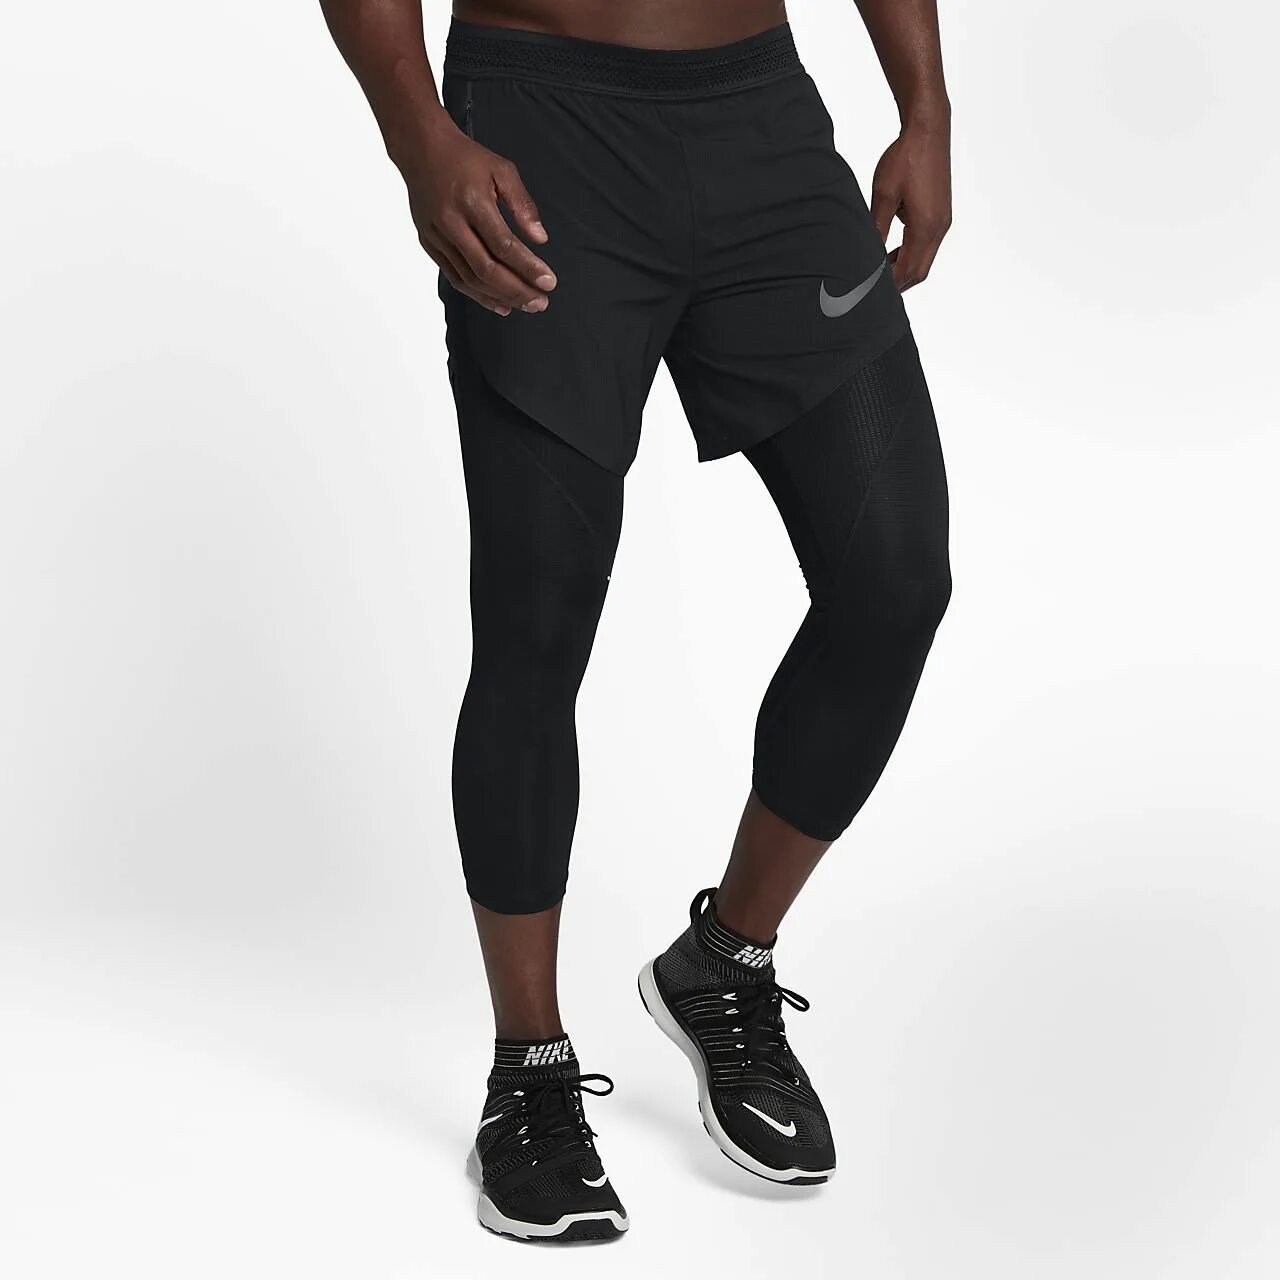 Тайтсы под шорты. Тайтсы Nike Hypercool мужские. Nike Training тайтсы и шорты. Nike Training Flex 2 in 1 short. Шорты с тайтсами мужские Nike.